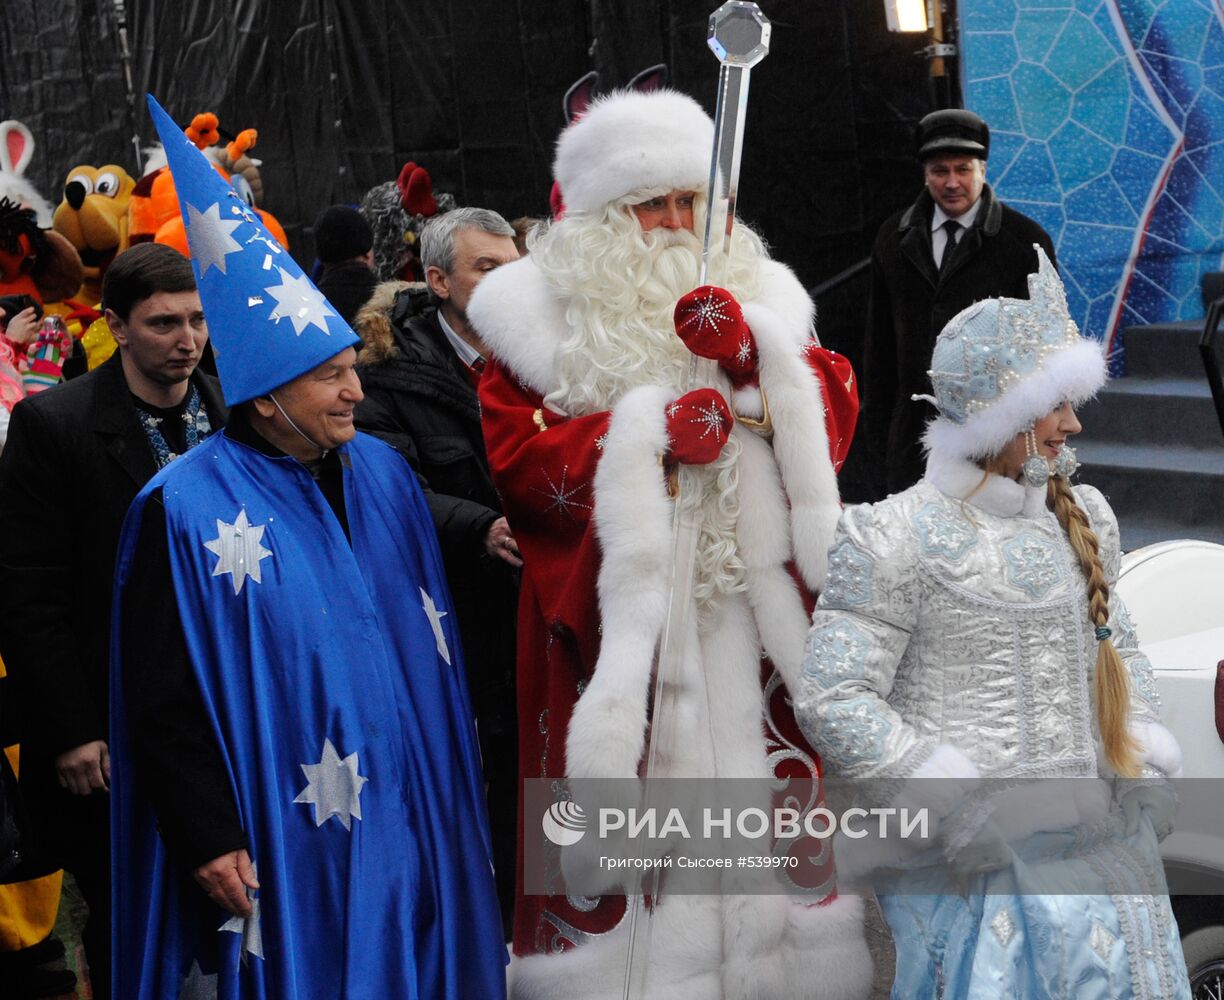 Встреча Деда Мороза на Манежной площади в Москве